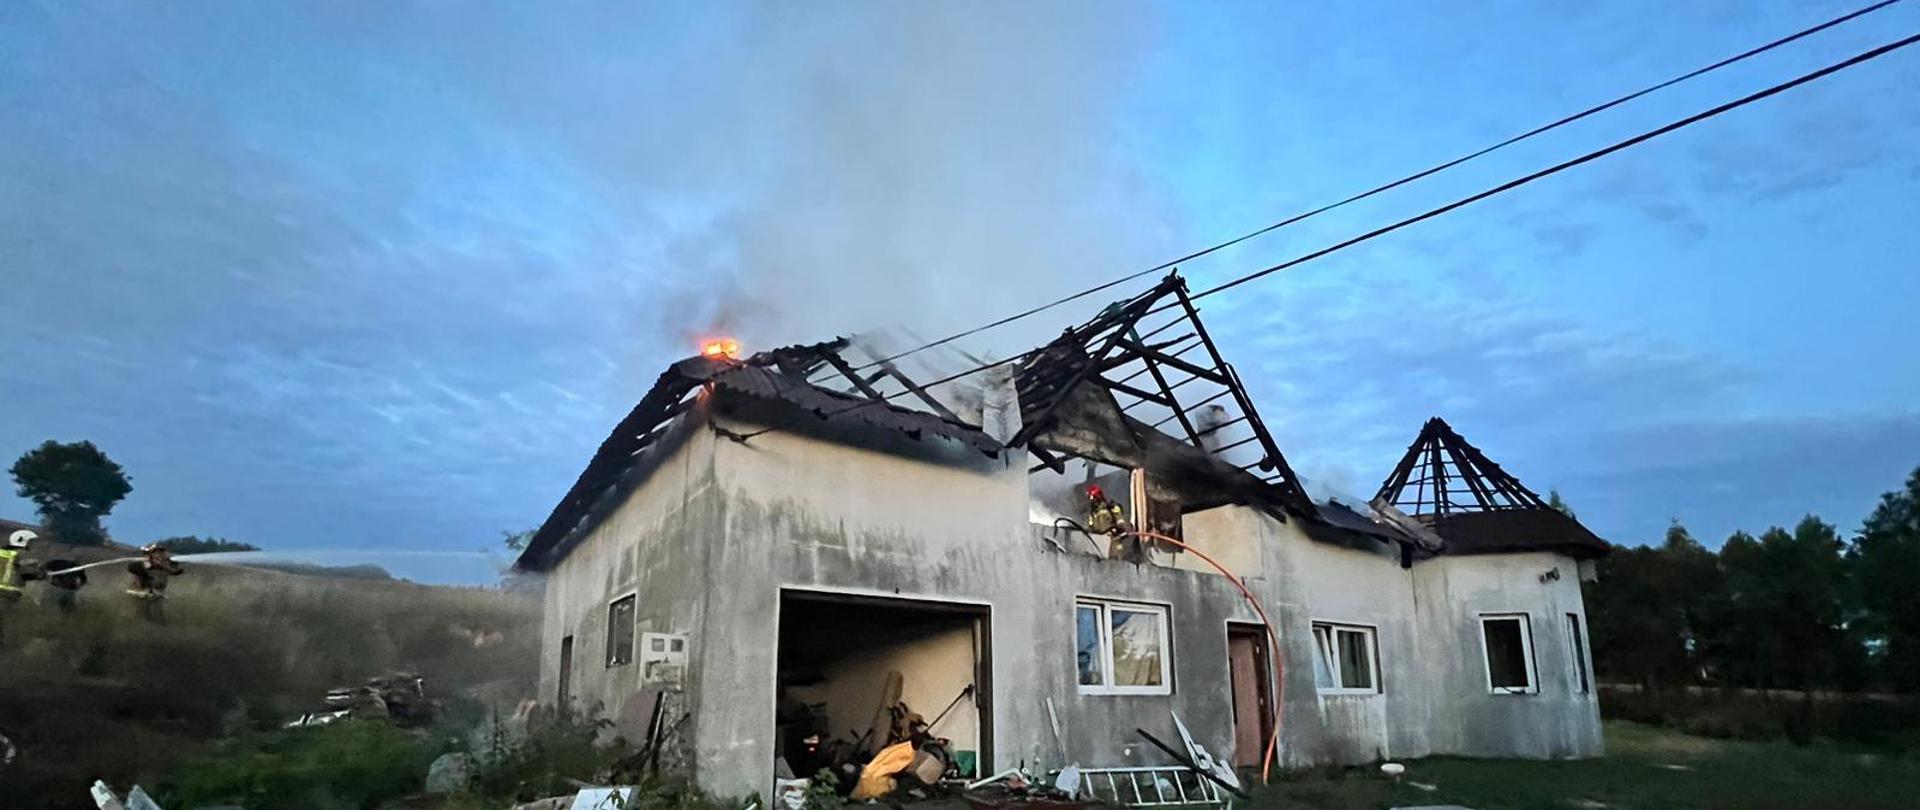 Na zdjęciu widoczny dom mieszkalny oraz strażak dogaszający dach budynku